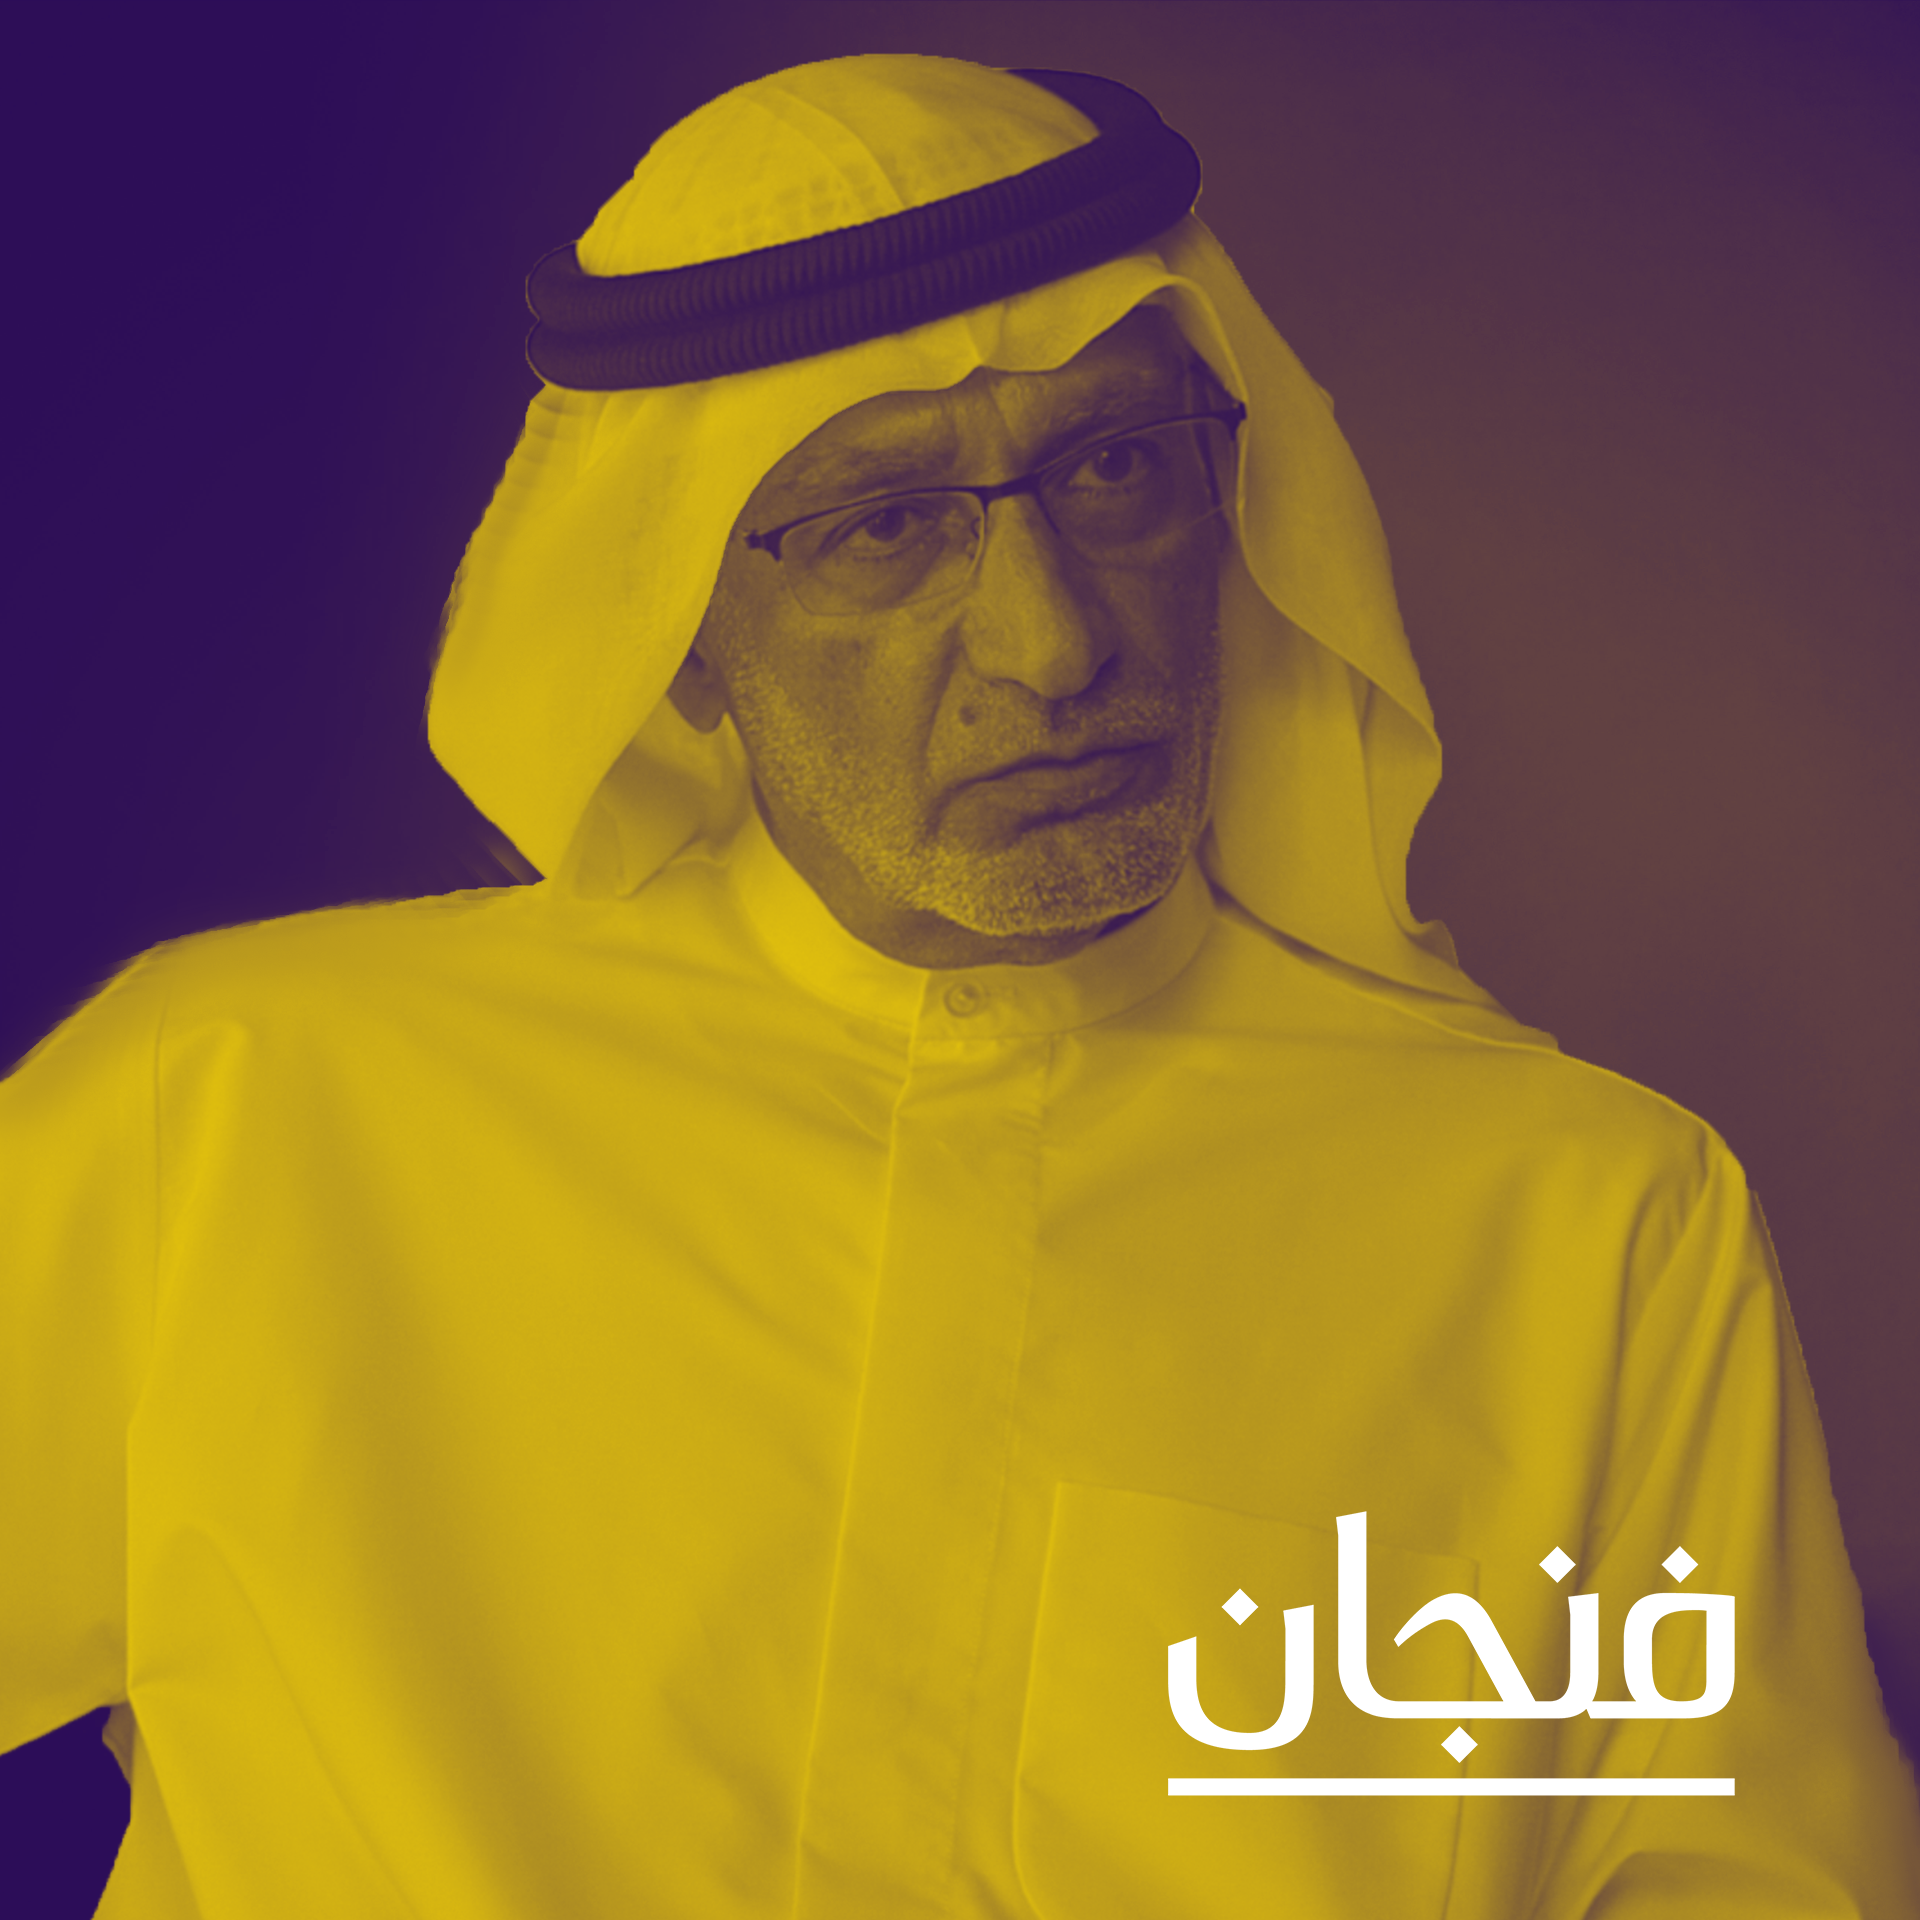 دول الخليج مركز الثقل العربي الجديد مع عبدالخالق عبدالله